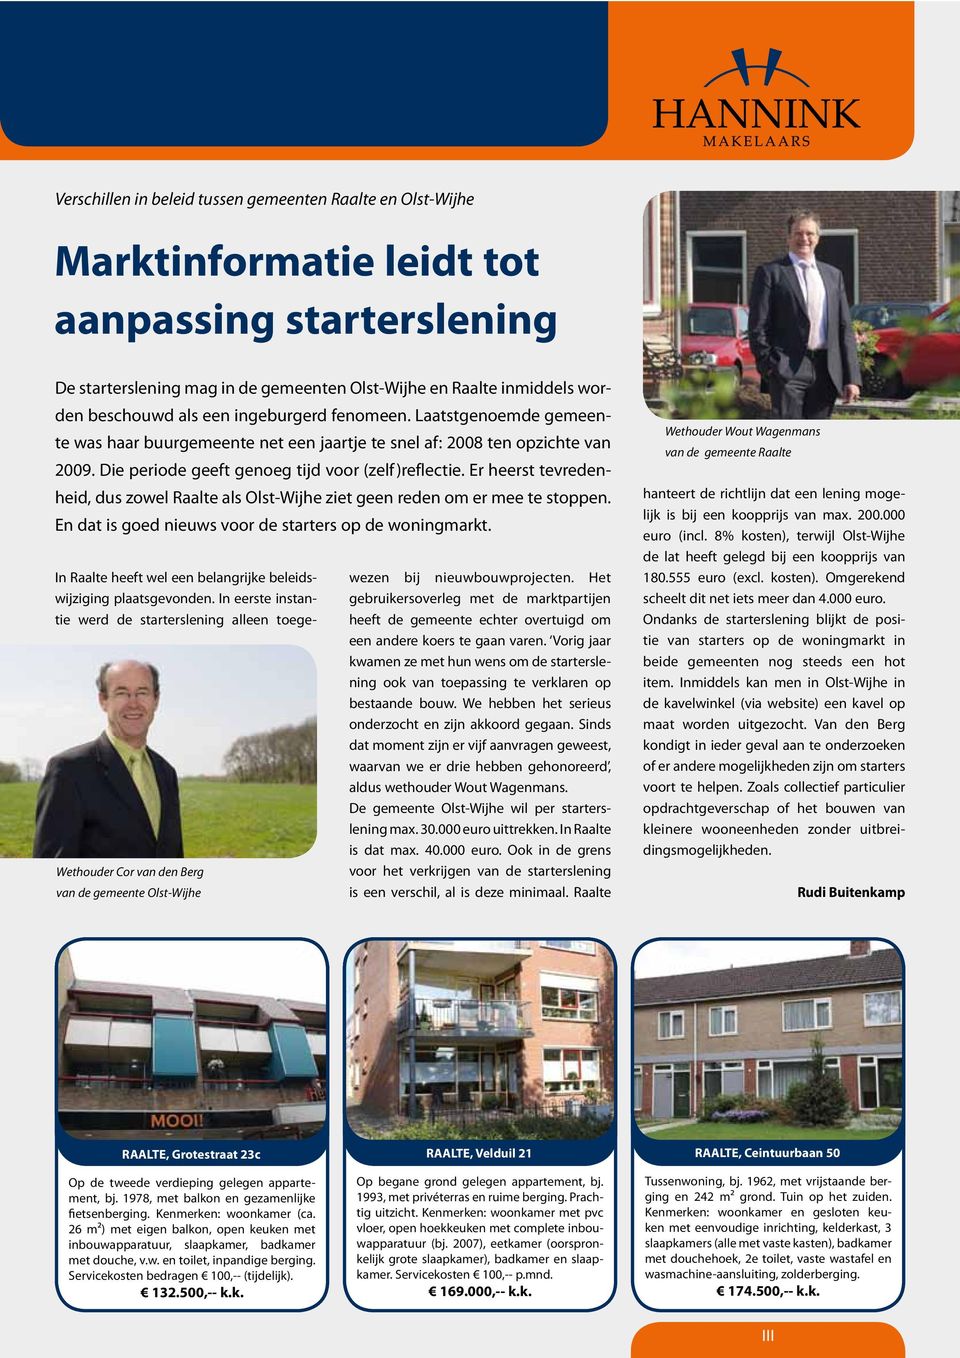 In eerste instantie werd de starterslening alleen toege- Wethouder Cor van den Berg van de gemeente Olst-Wijhe wezen bij nieuwbouwprojecten.